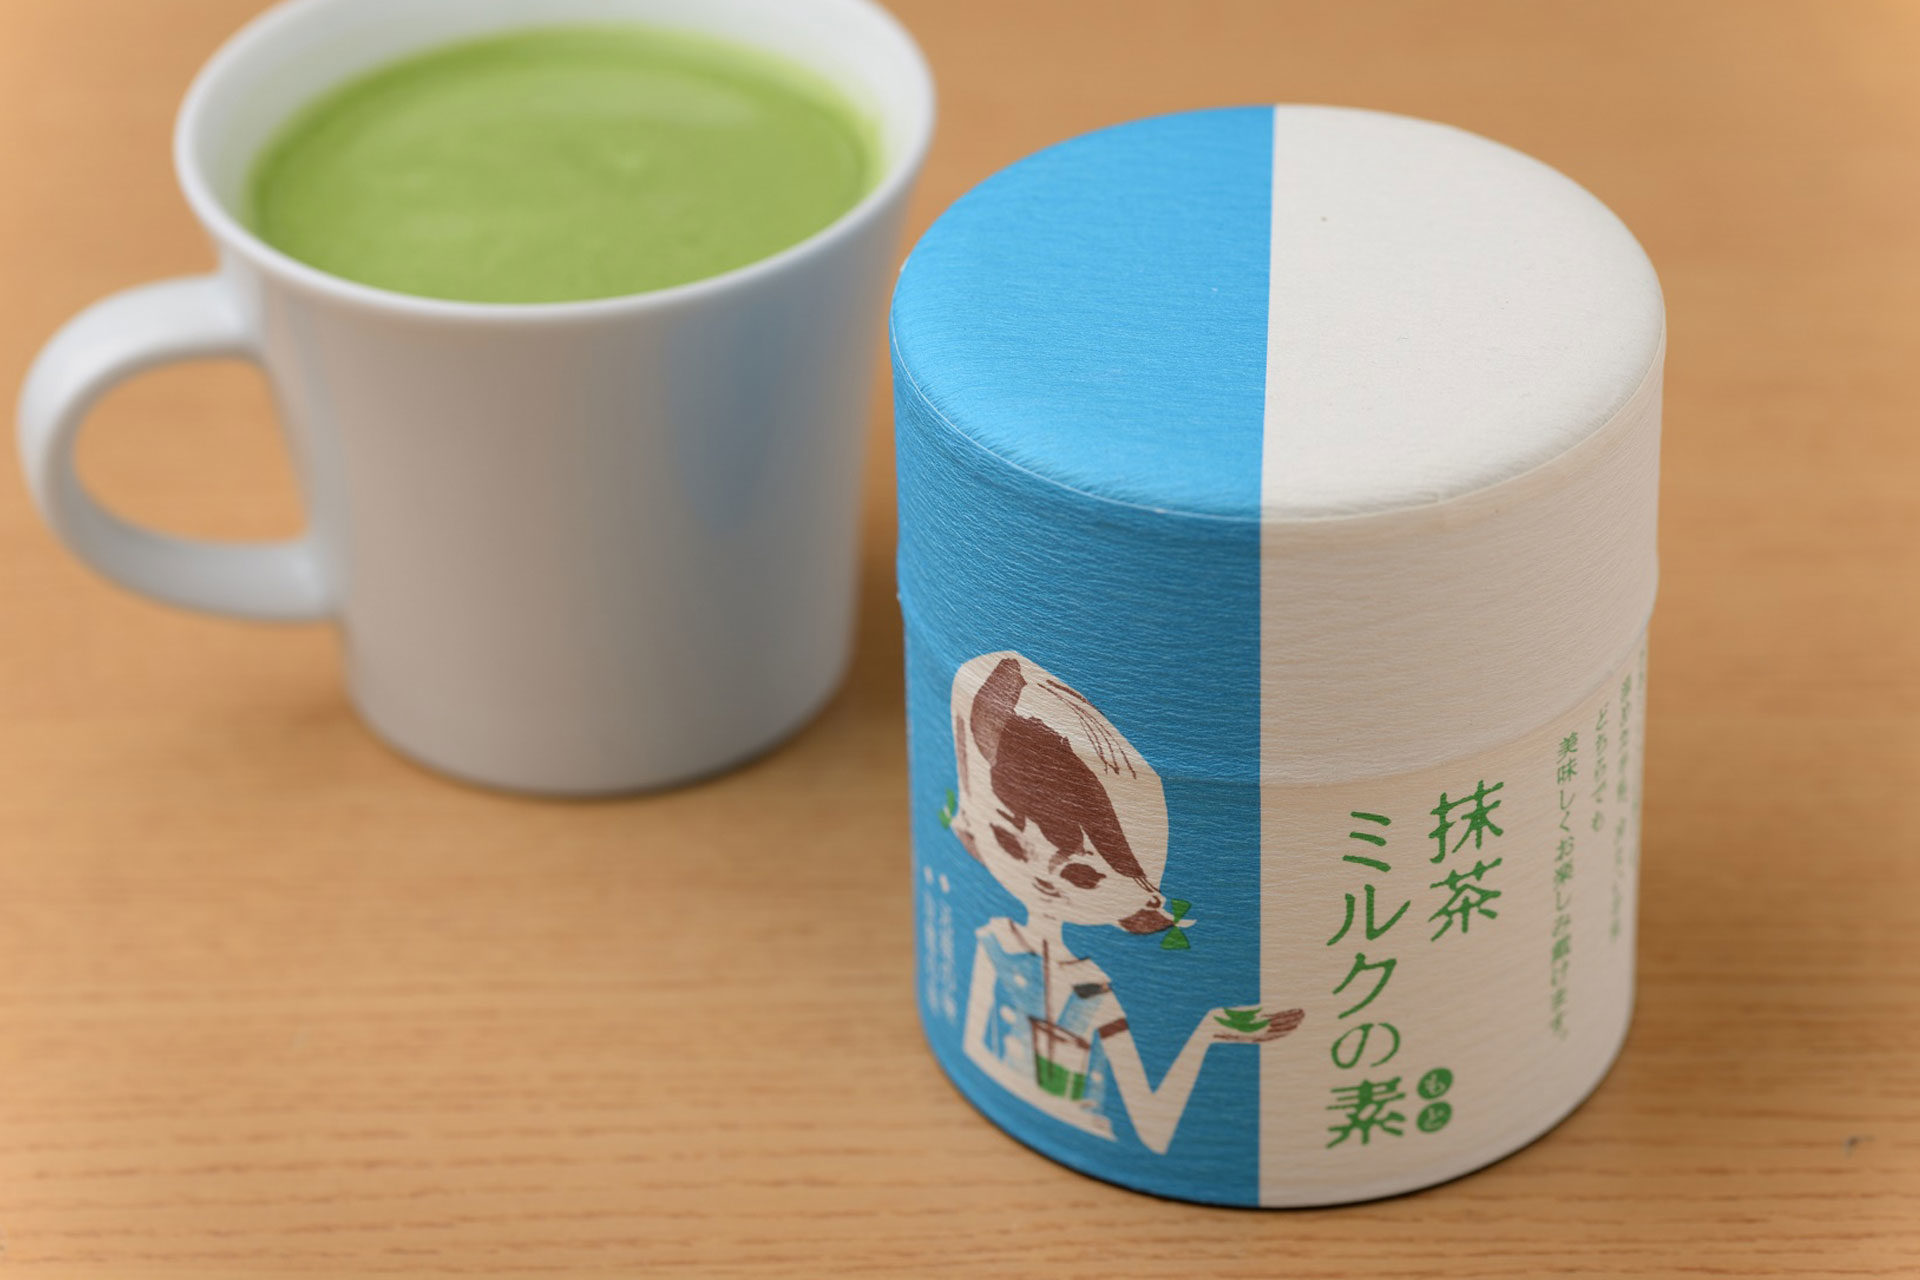 說起引領流行的元祖抹茶霜淇淋就是這個！